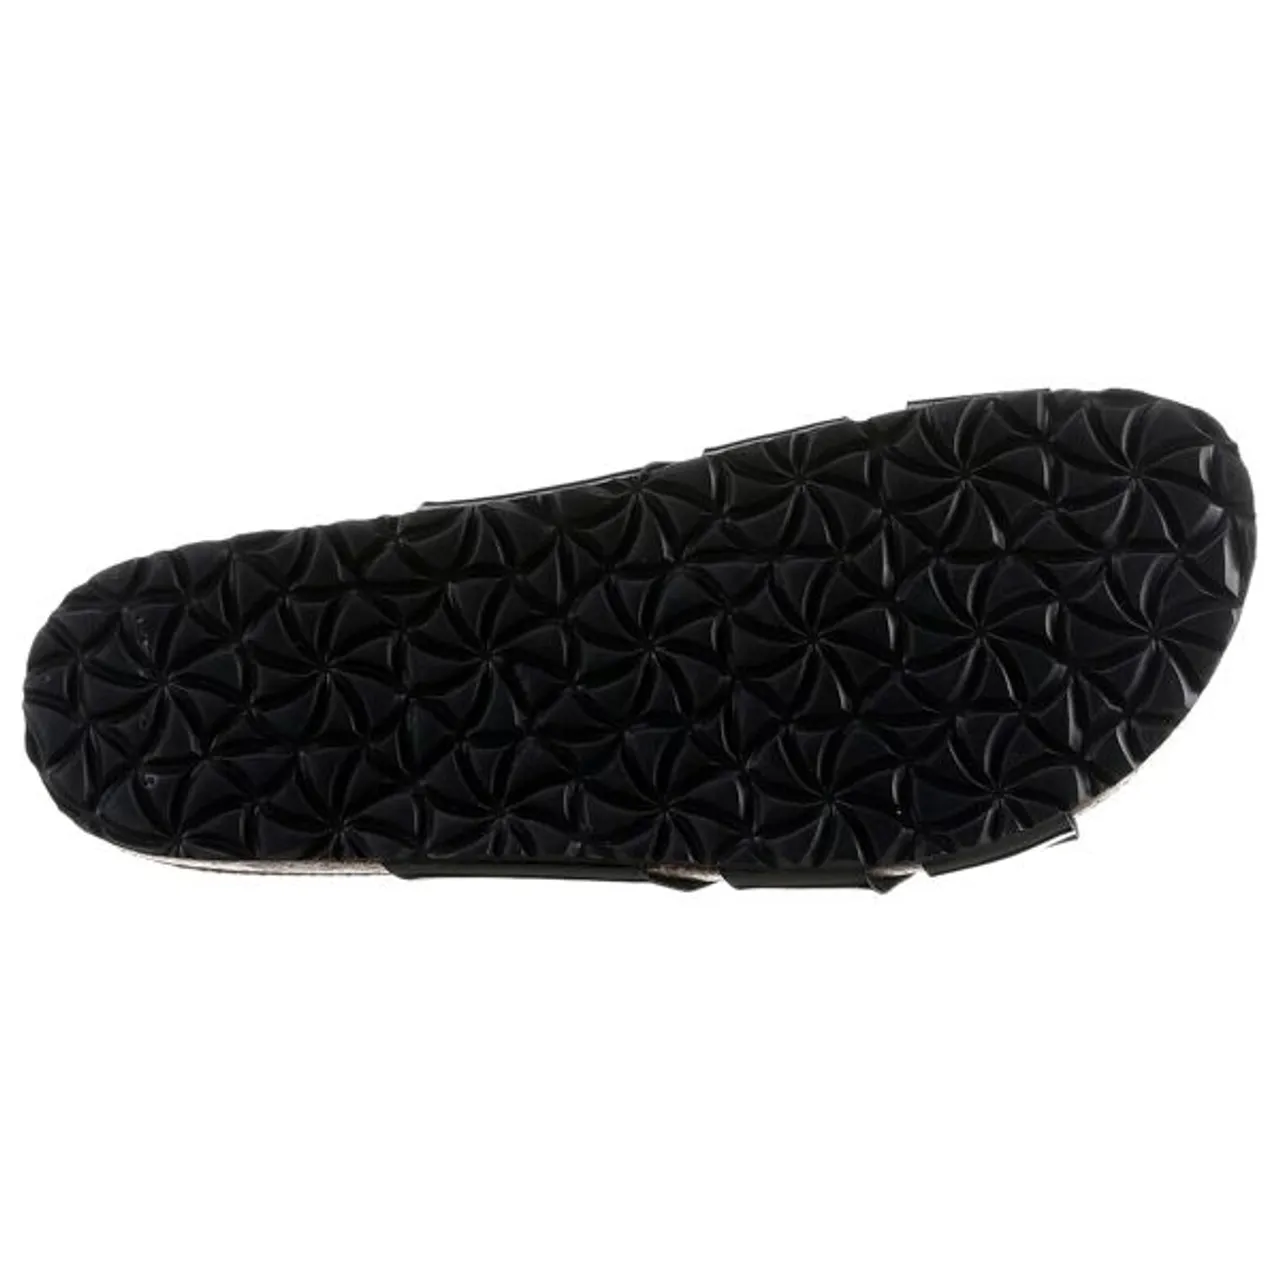 Pantolette TAMARIS Gr. 38, schwarz (schwarz, lack) Damen Schuhe Strandaccessoires Sommerschuh, Schlappen mit eleganter Bandage